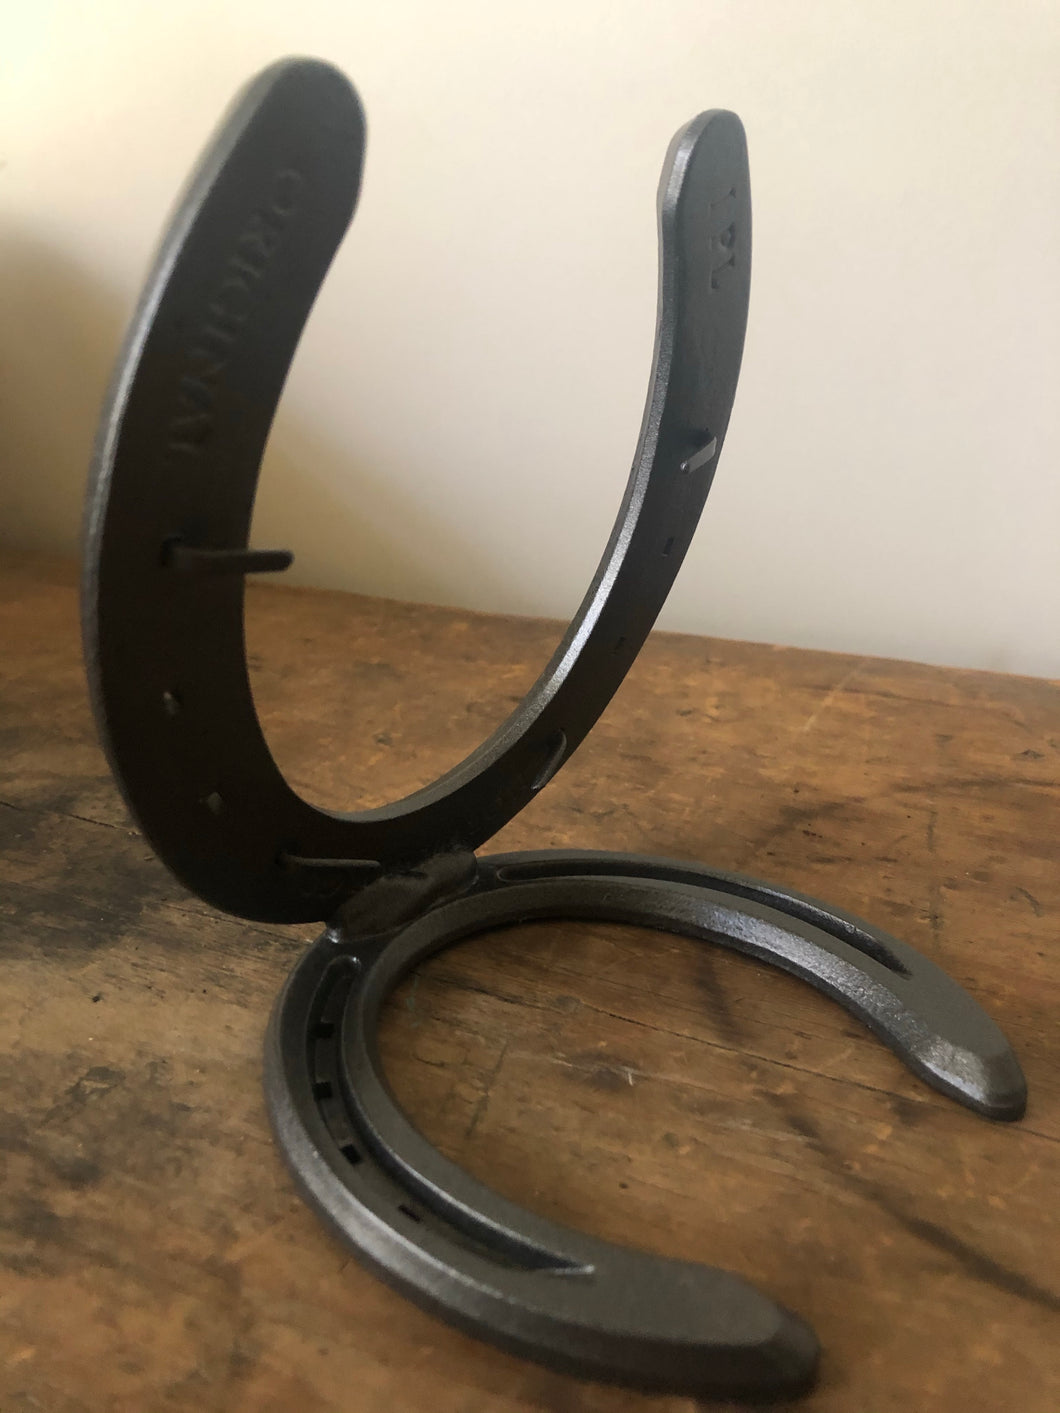 Large horseshoe heart – Katie Holmes' Horseshoe Art